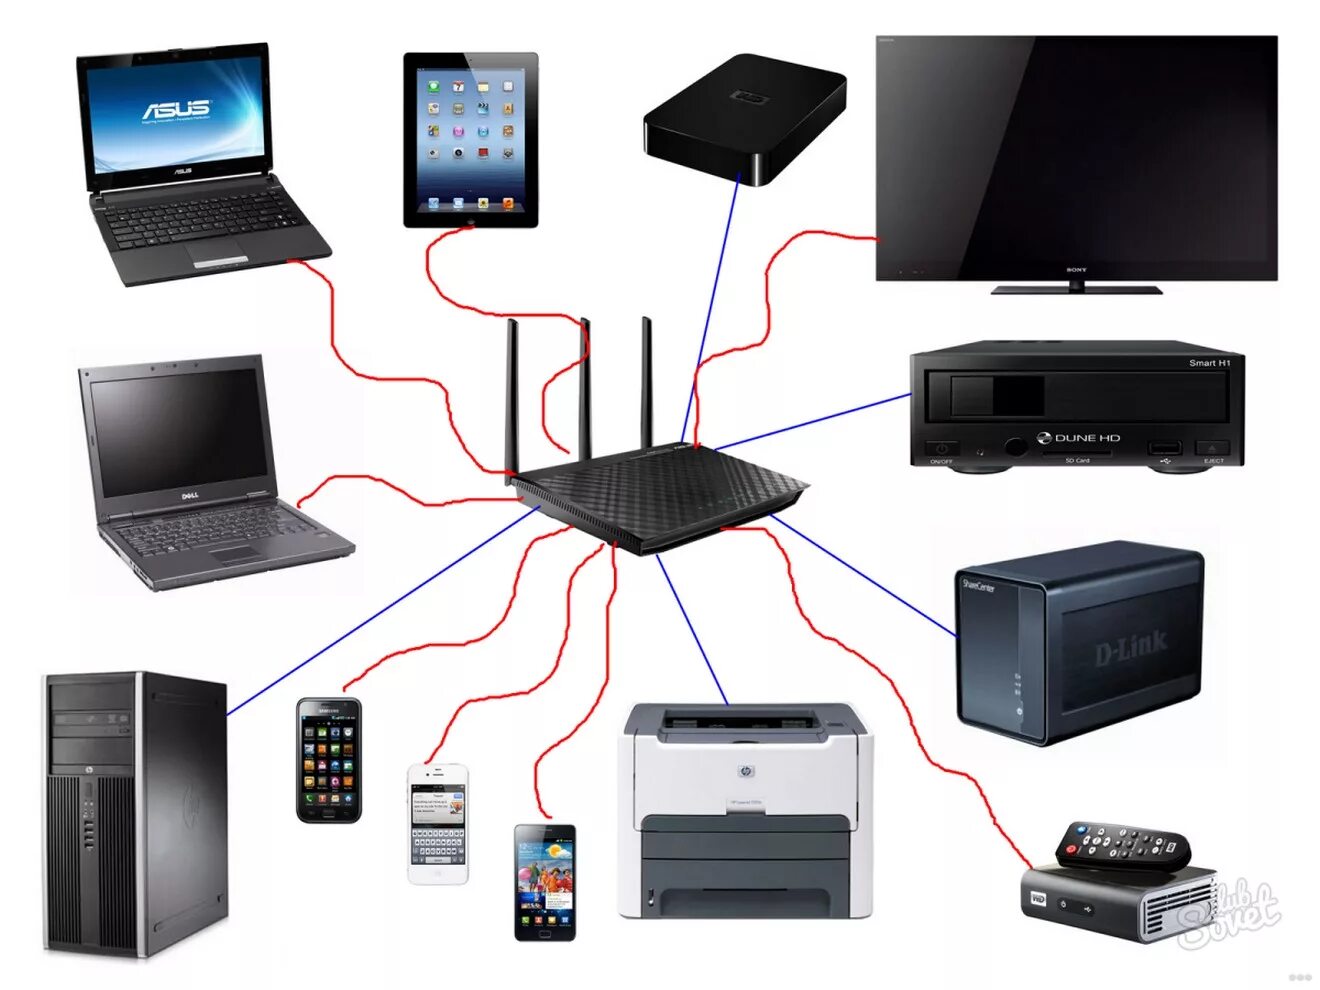 Интернет подключить домашний вай. Маршрутизатор Wi Fi сеть ПК. Домашняя локальная сеть через WIFI роутер. 2 ПК,5 ноутбуков, файерволл, Wi-Fi роутер, сервер сетевая диаграмма. Маршрутизатор для проводной локальной сети.